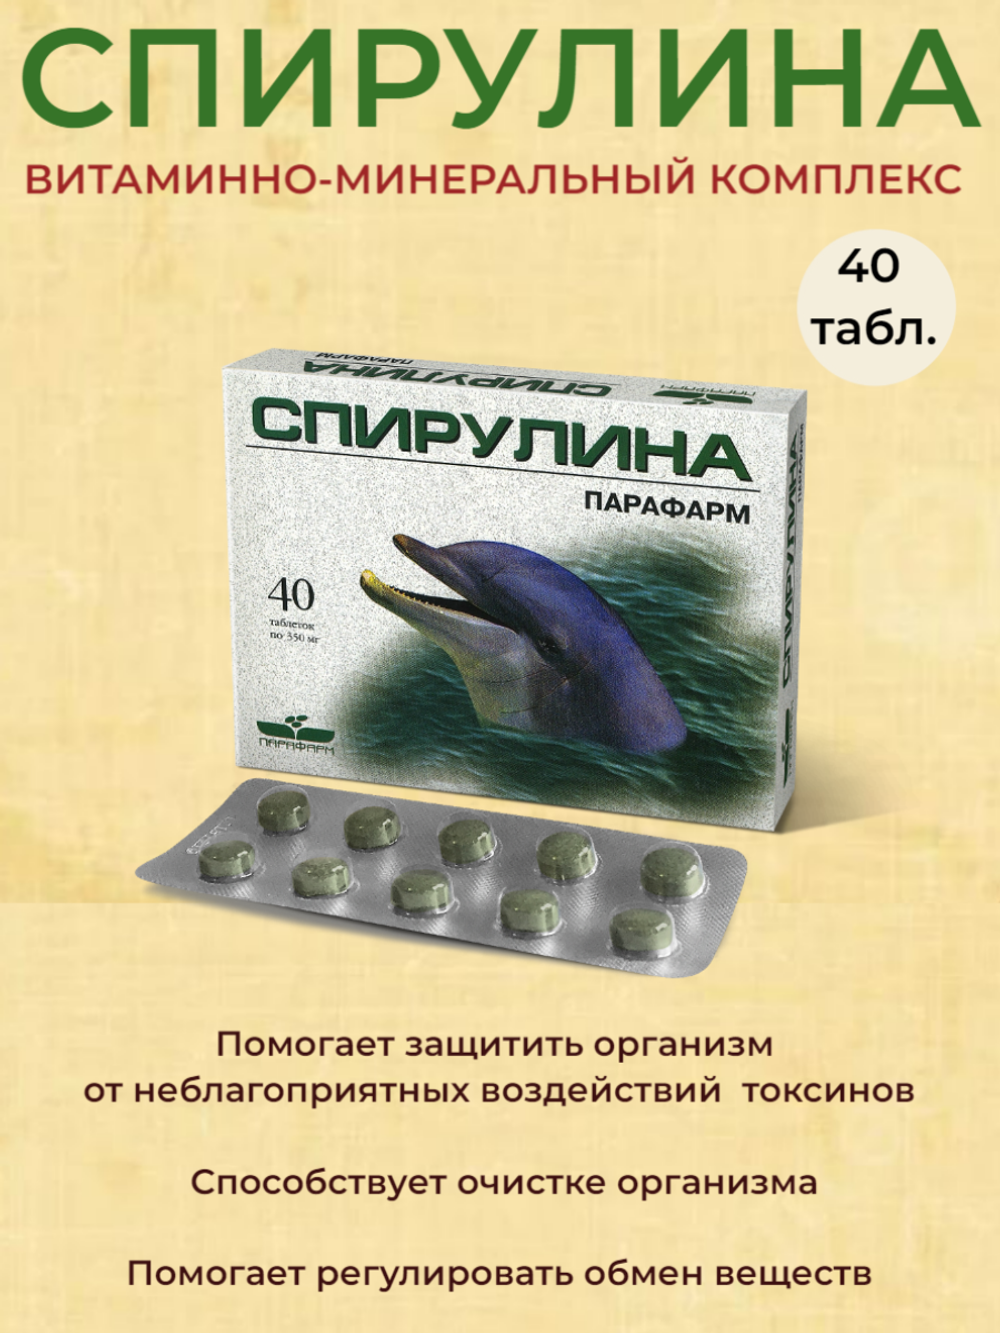 Спирулина - витаминно-минеральный комплекс, 40 таблеток